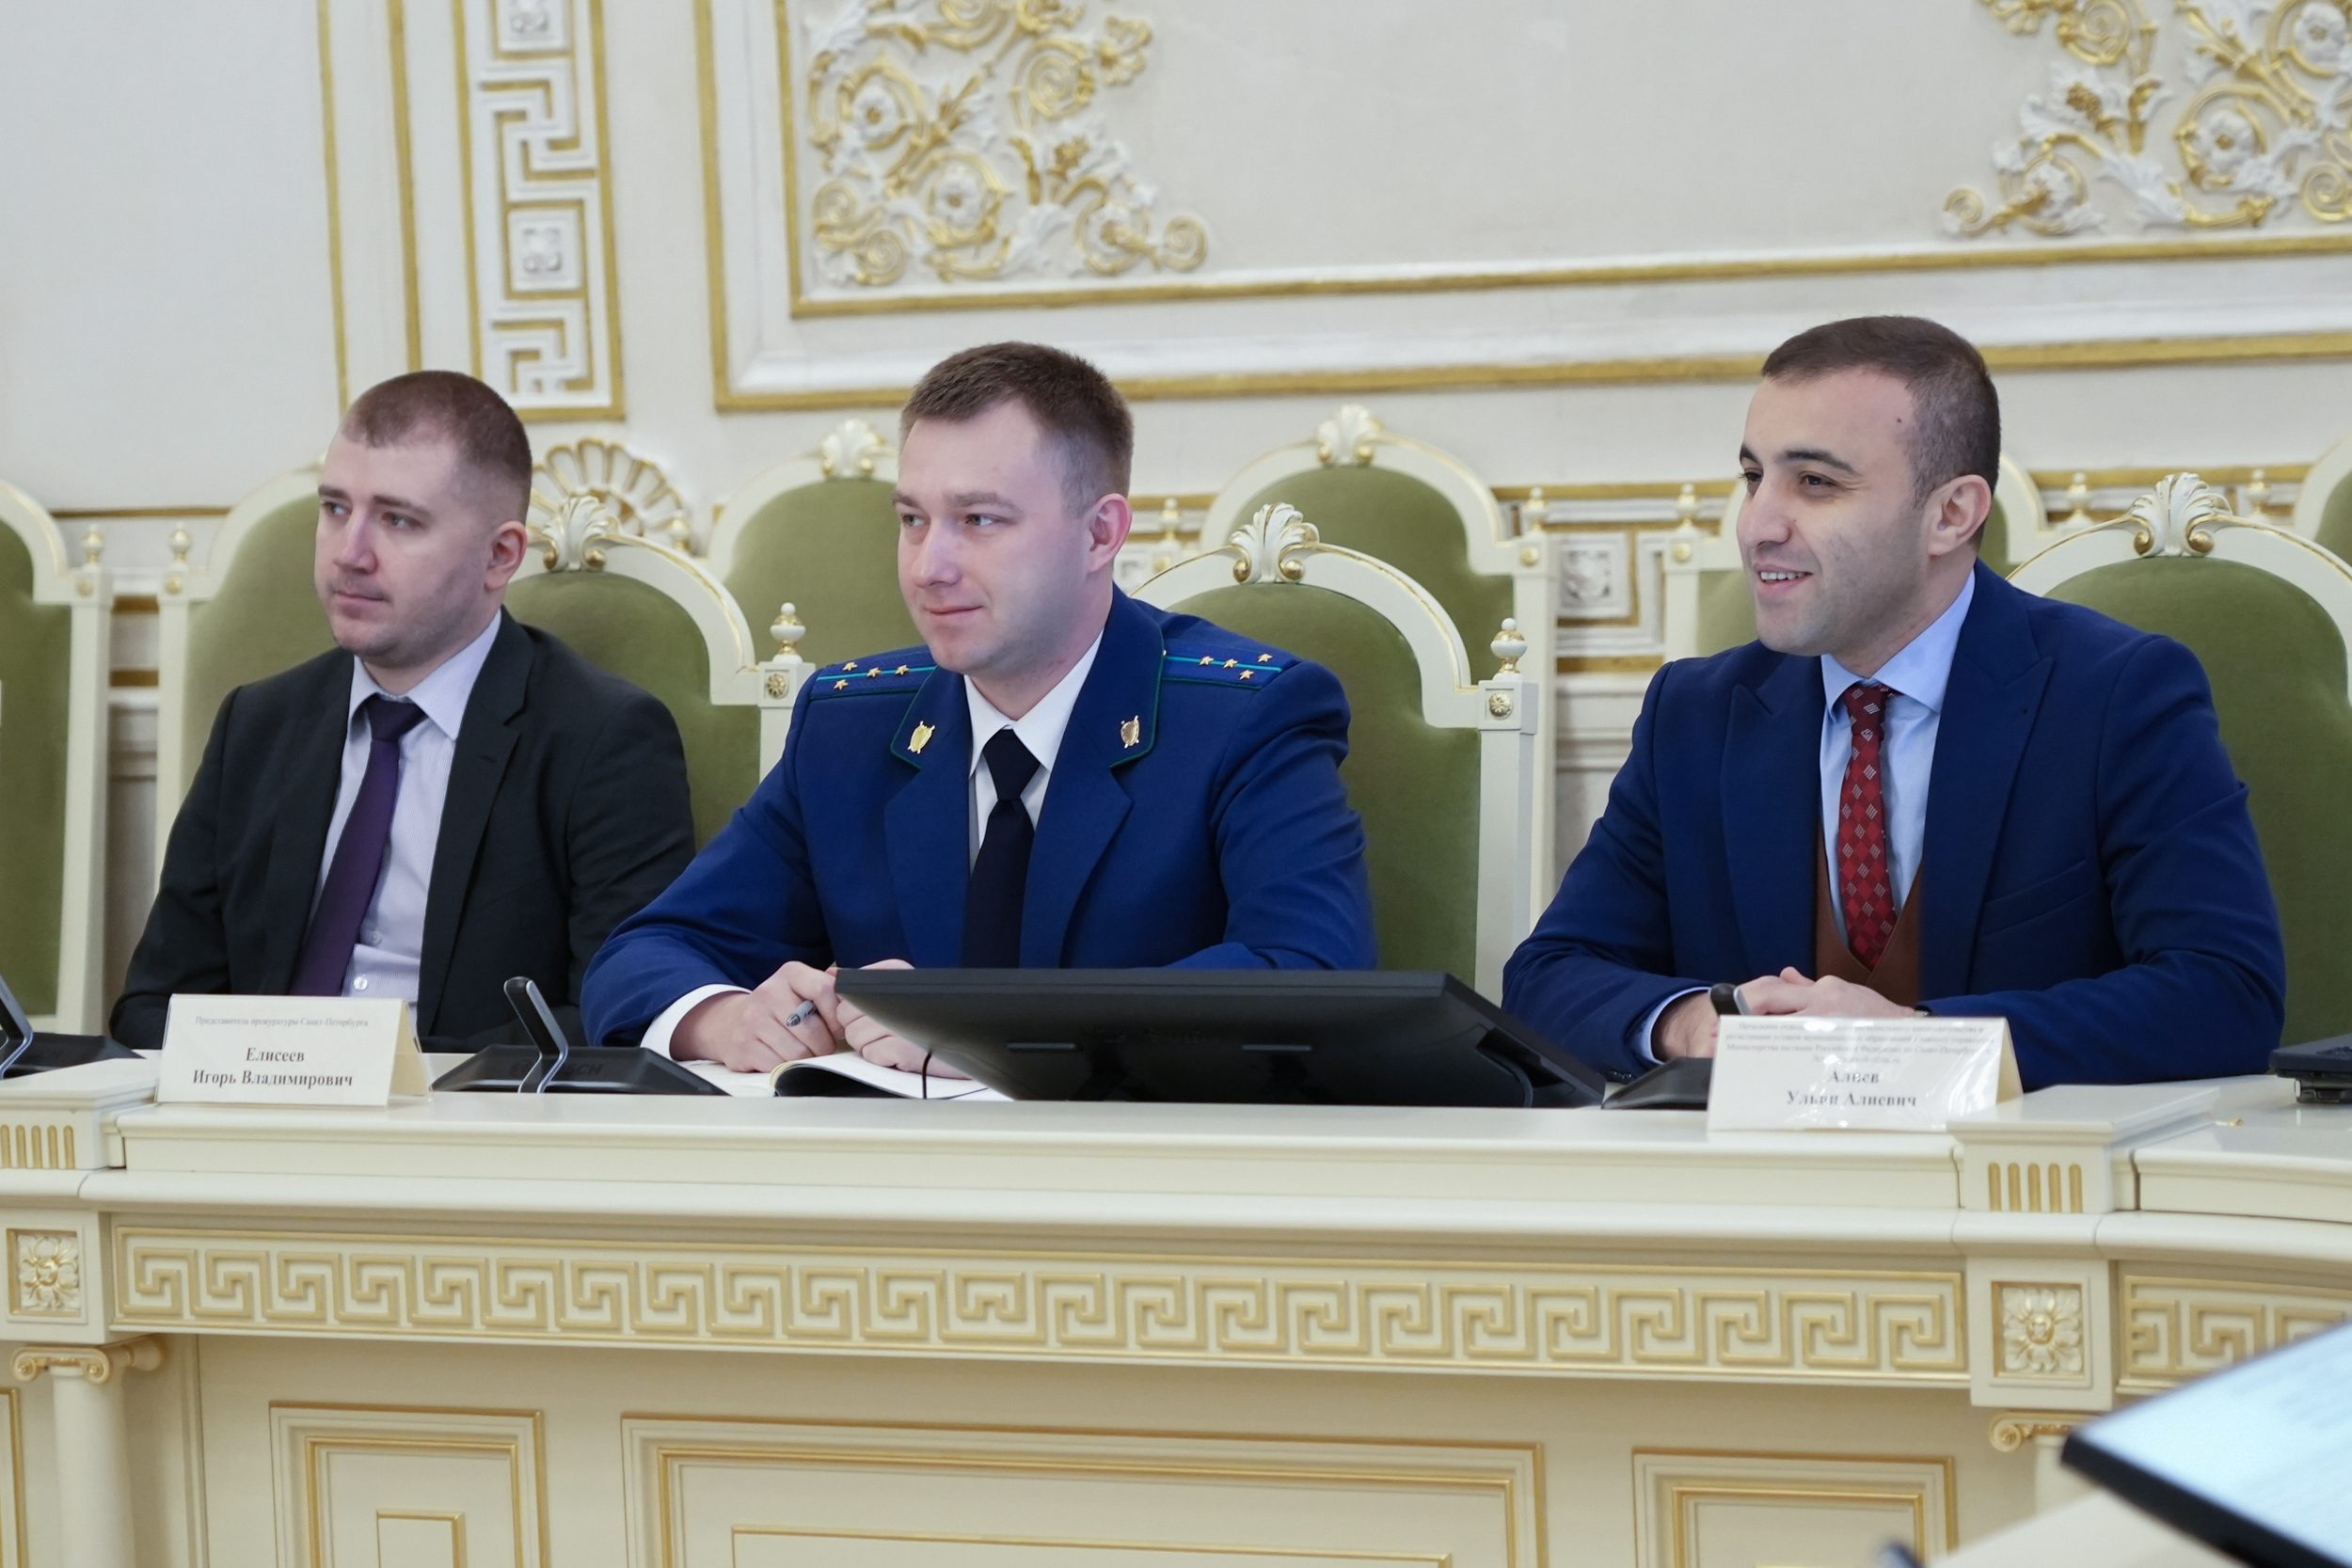 Комитет по законодательству поддержал законопроект о развитии международного сотрудничества Санкт-Петербурга